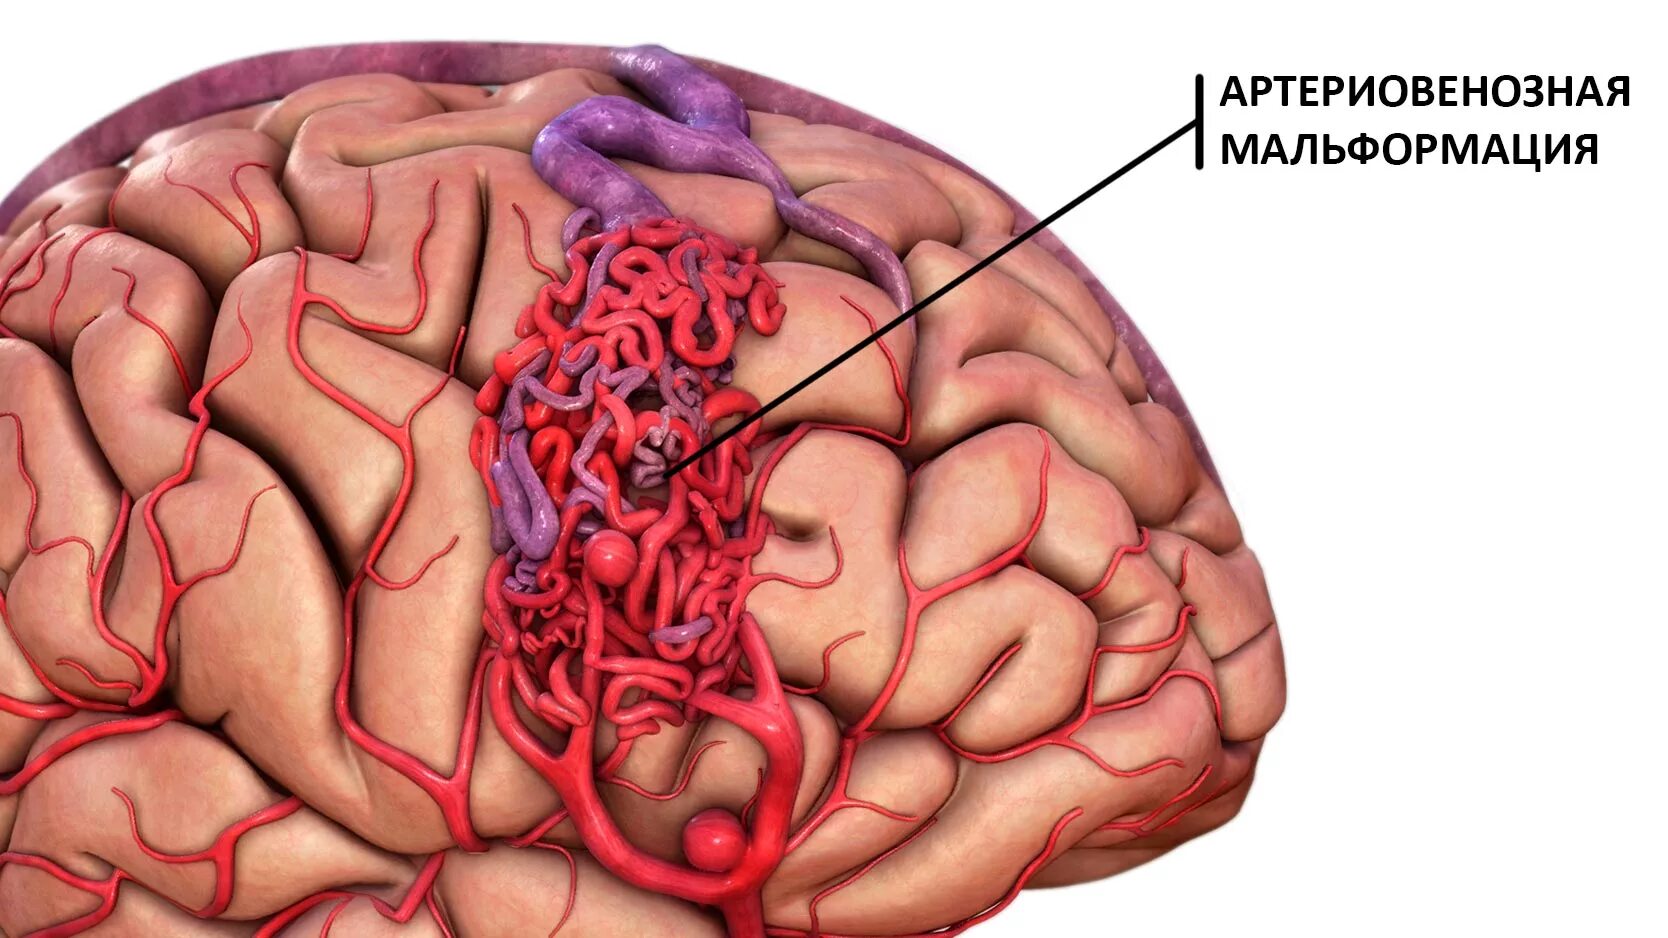 Сосудистая аномалия. АВМ мальформация сосудов головного мозга. Ртерио-венозная мальформация. Артериовенозные мальформации сосудов головного мозга. Артериовенозная мальформация (АВМ).